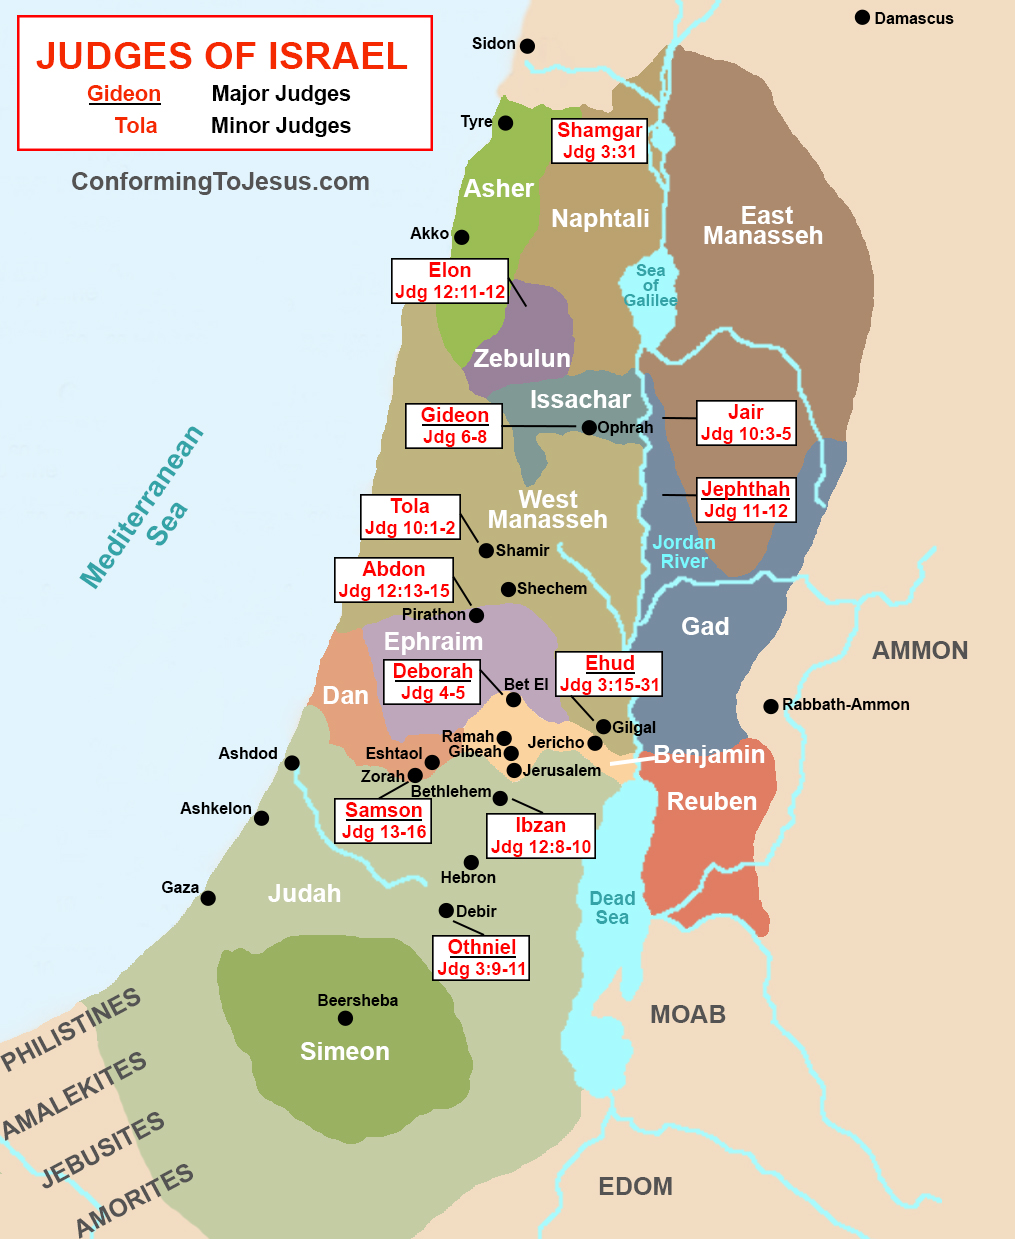 Judges of Ancient Israel Map - Old Testament Biblical Judges